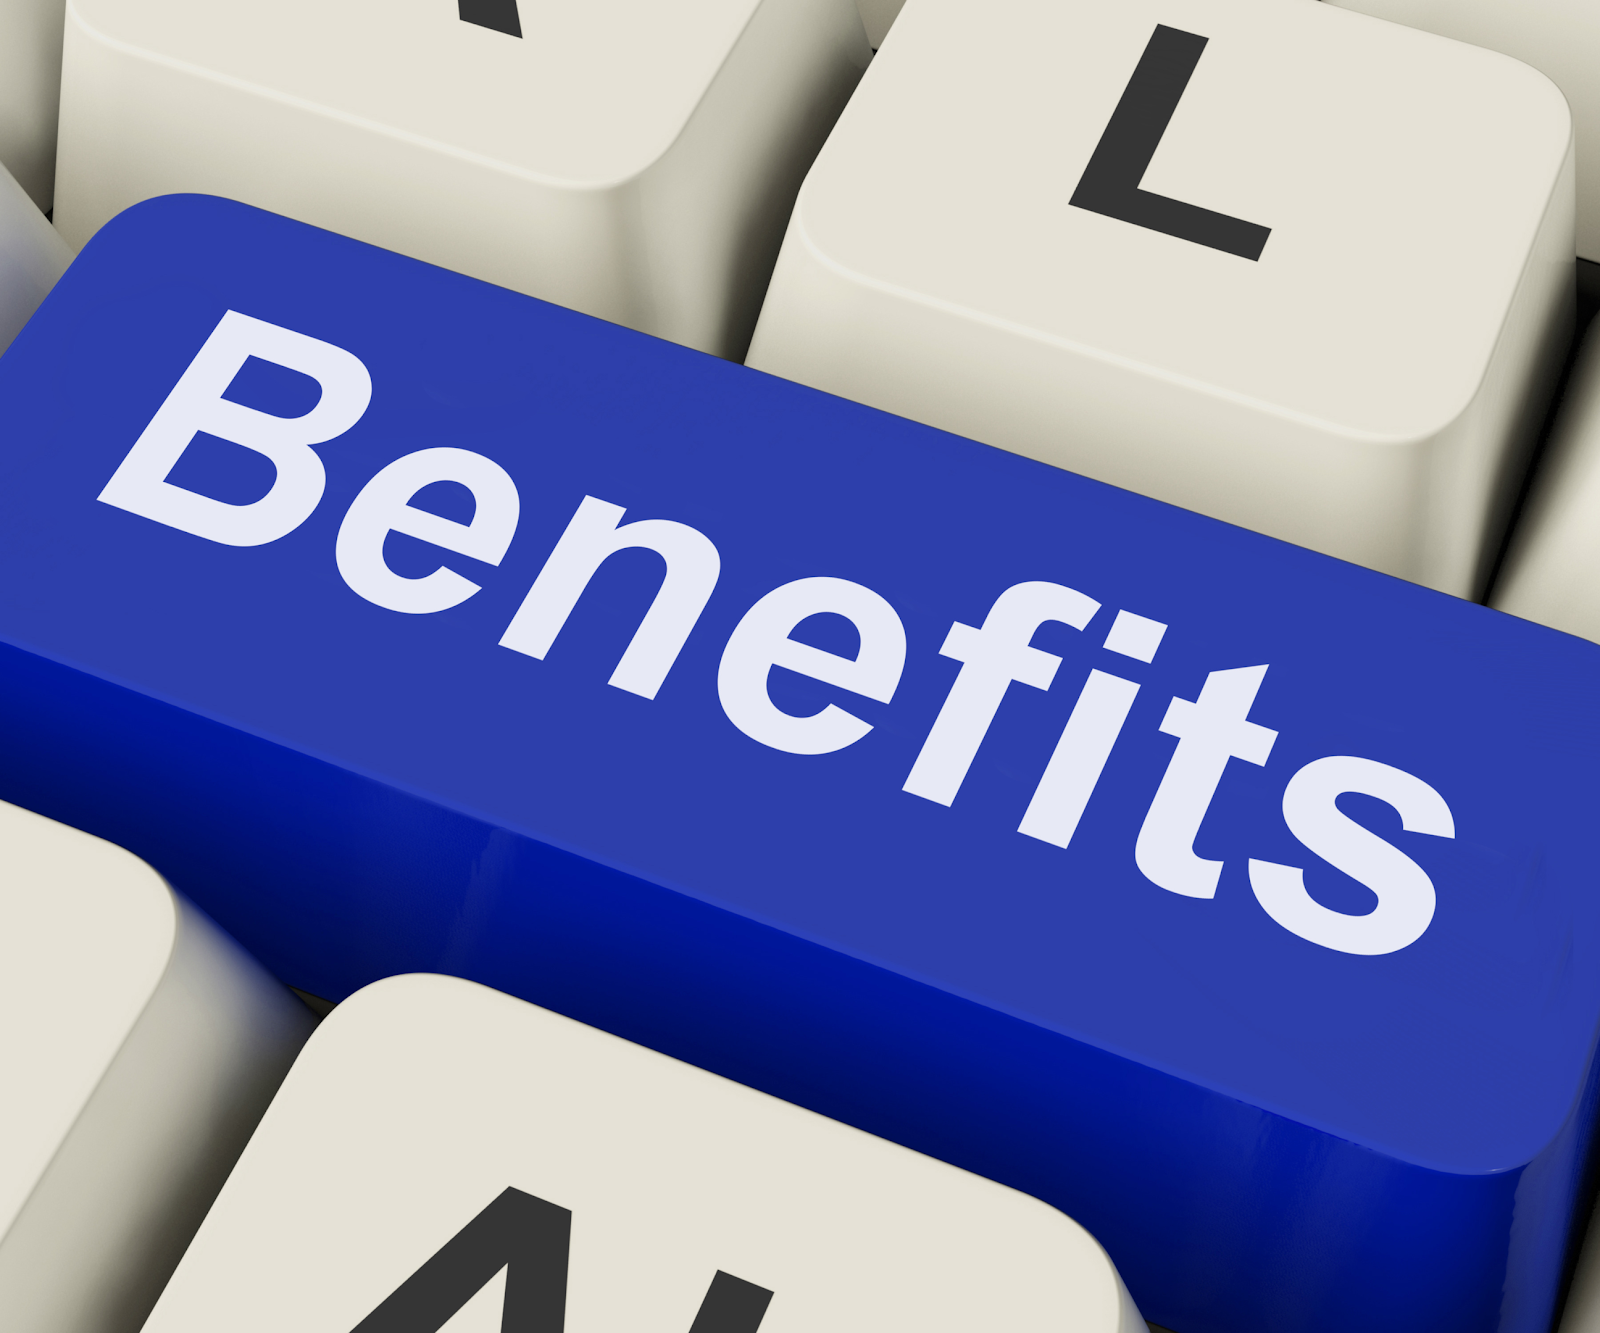 The word "Benefits" written on a blue keyboard key.